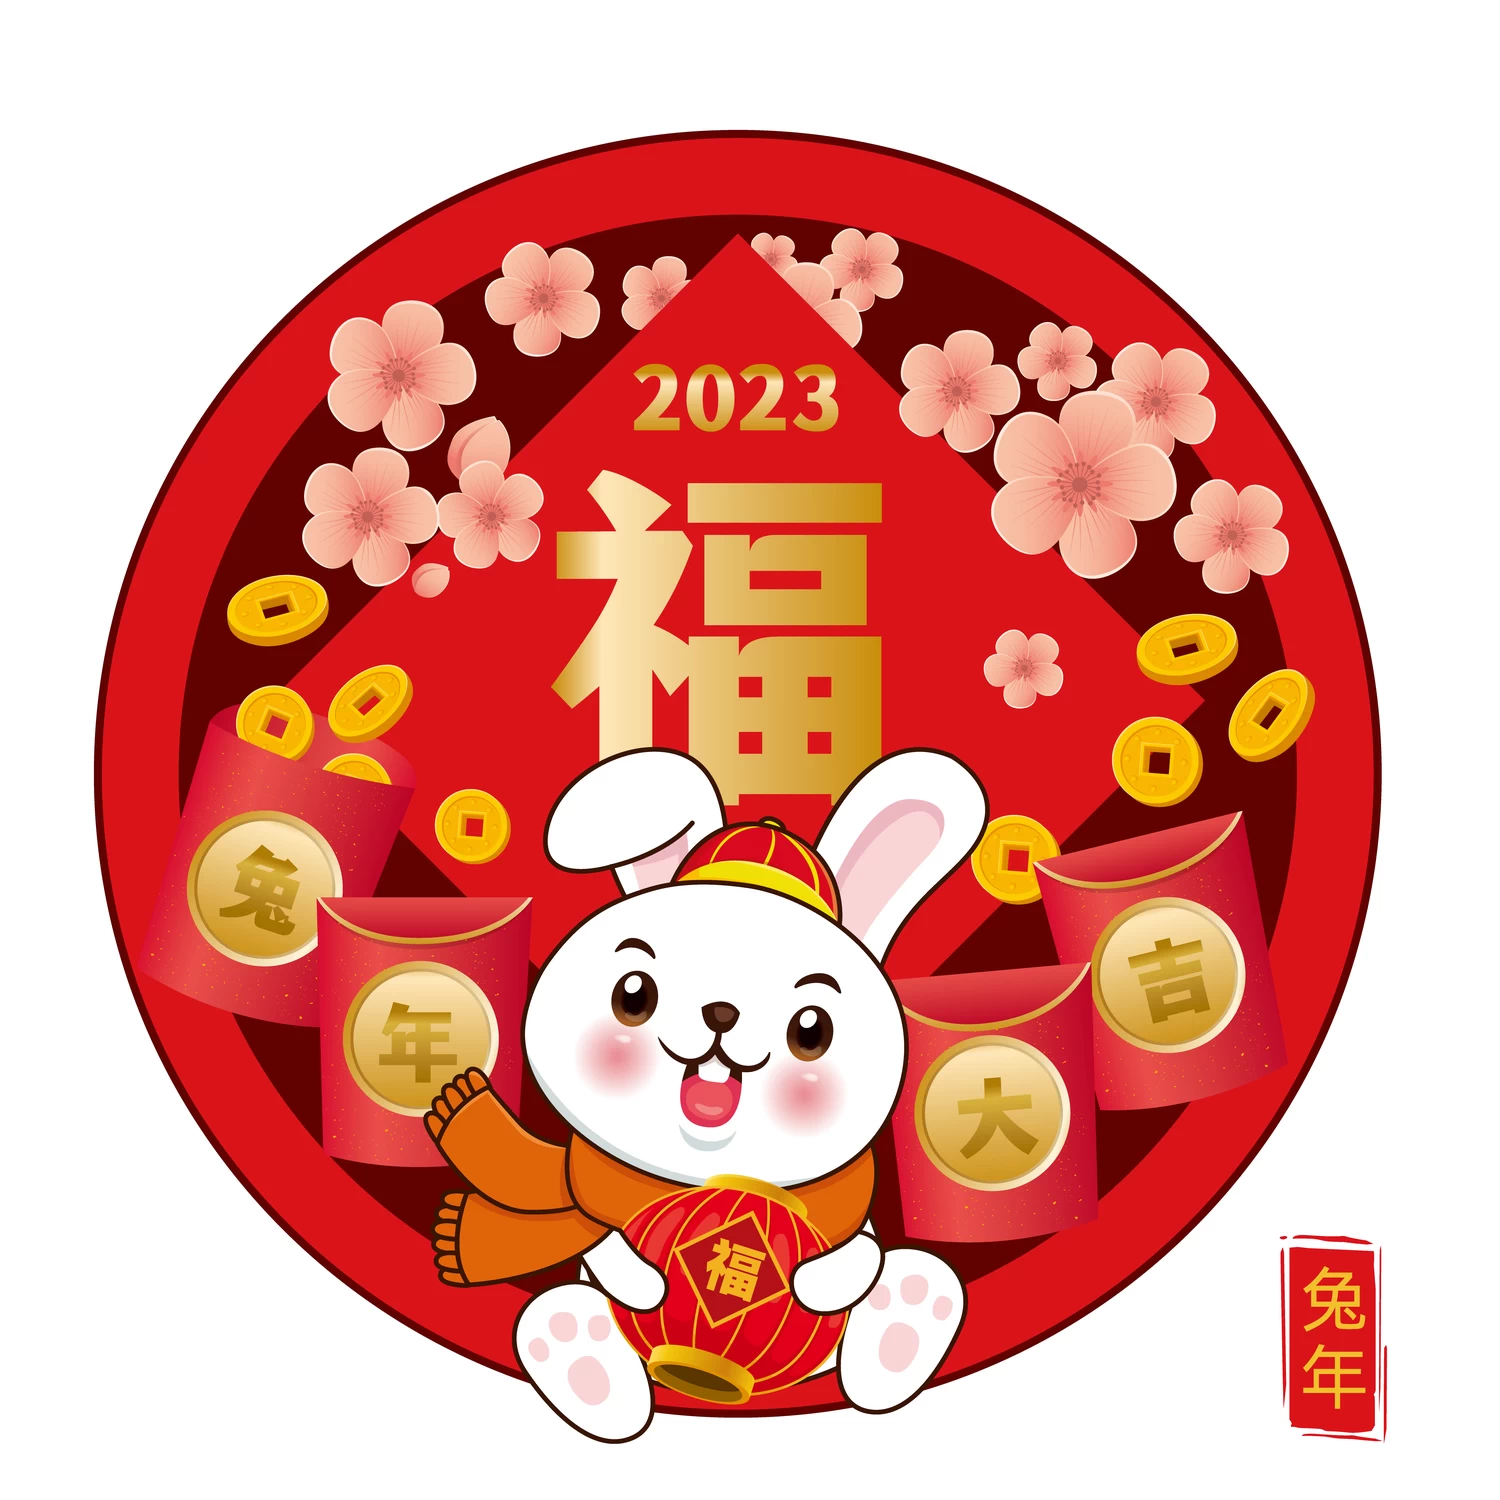 2023年兔年恭贺新春新年快乐喜庆节日宣传海报图片AI矢量设计素材【011】